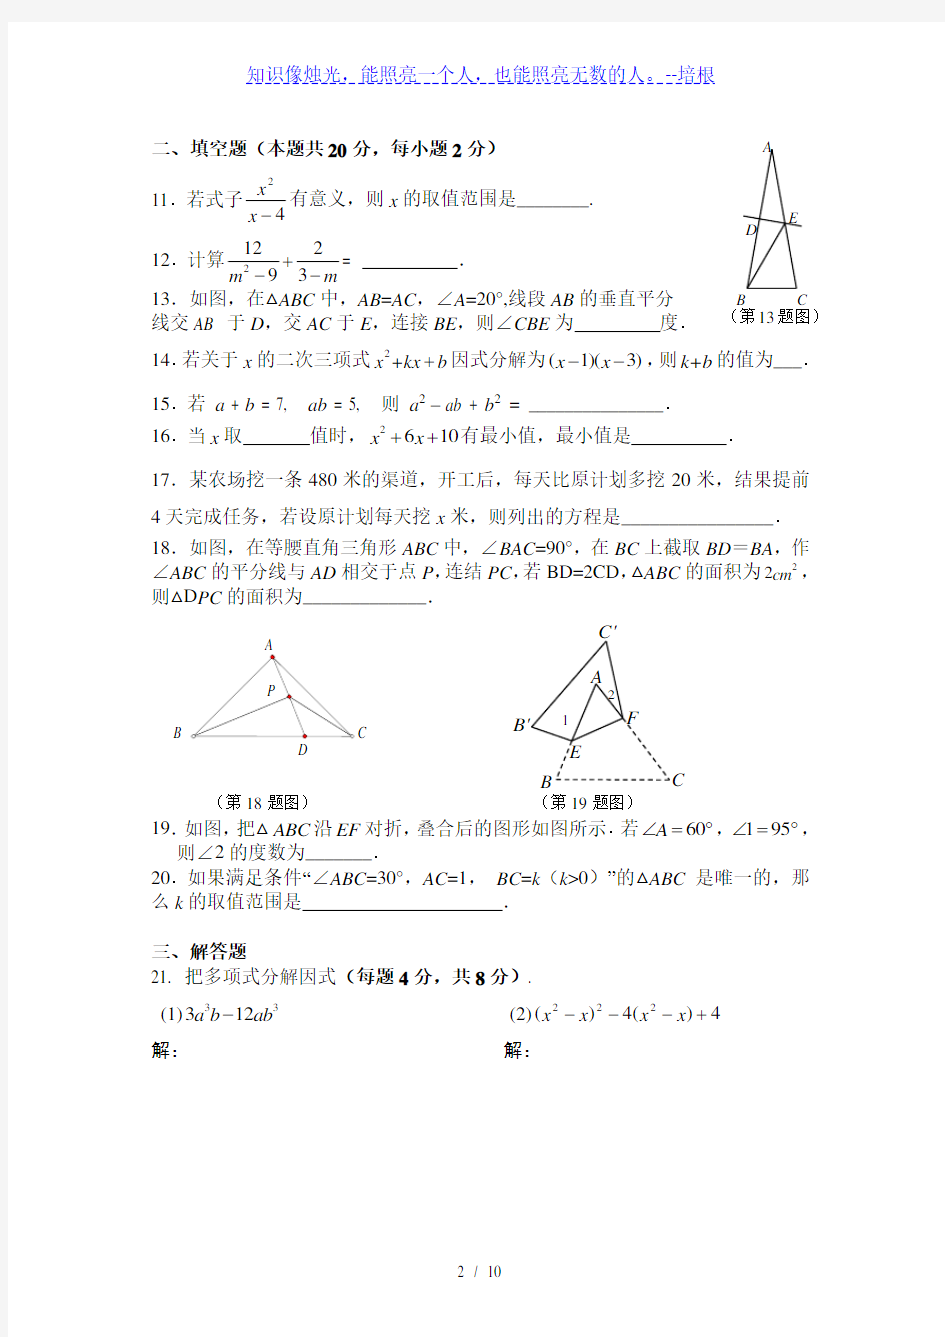 北京四中2014～2015学年初二上期中考试数学试题及答案